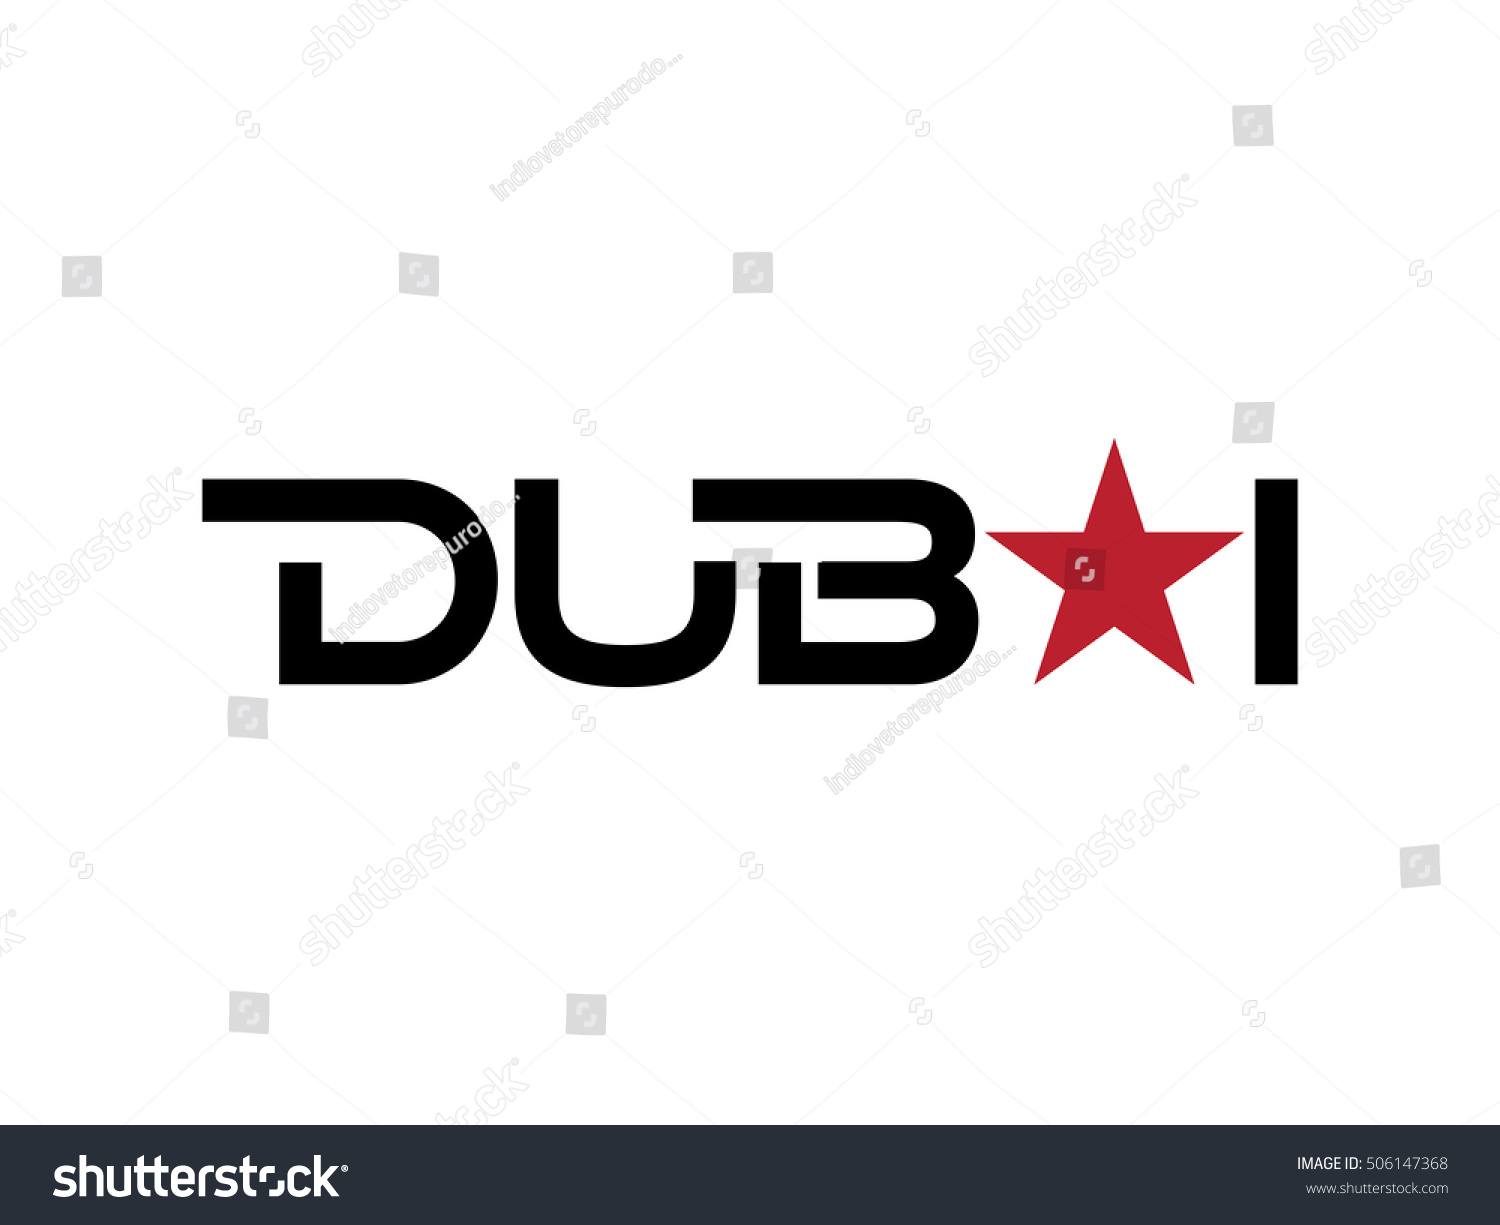 Dubai Logo Vector Stock Vector 506147368 - Shutterstock